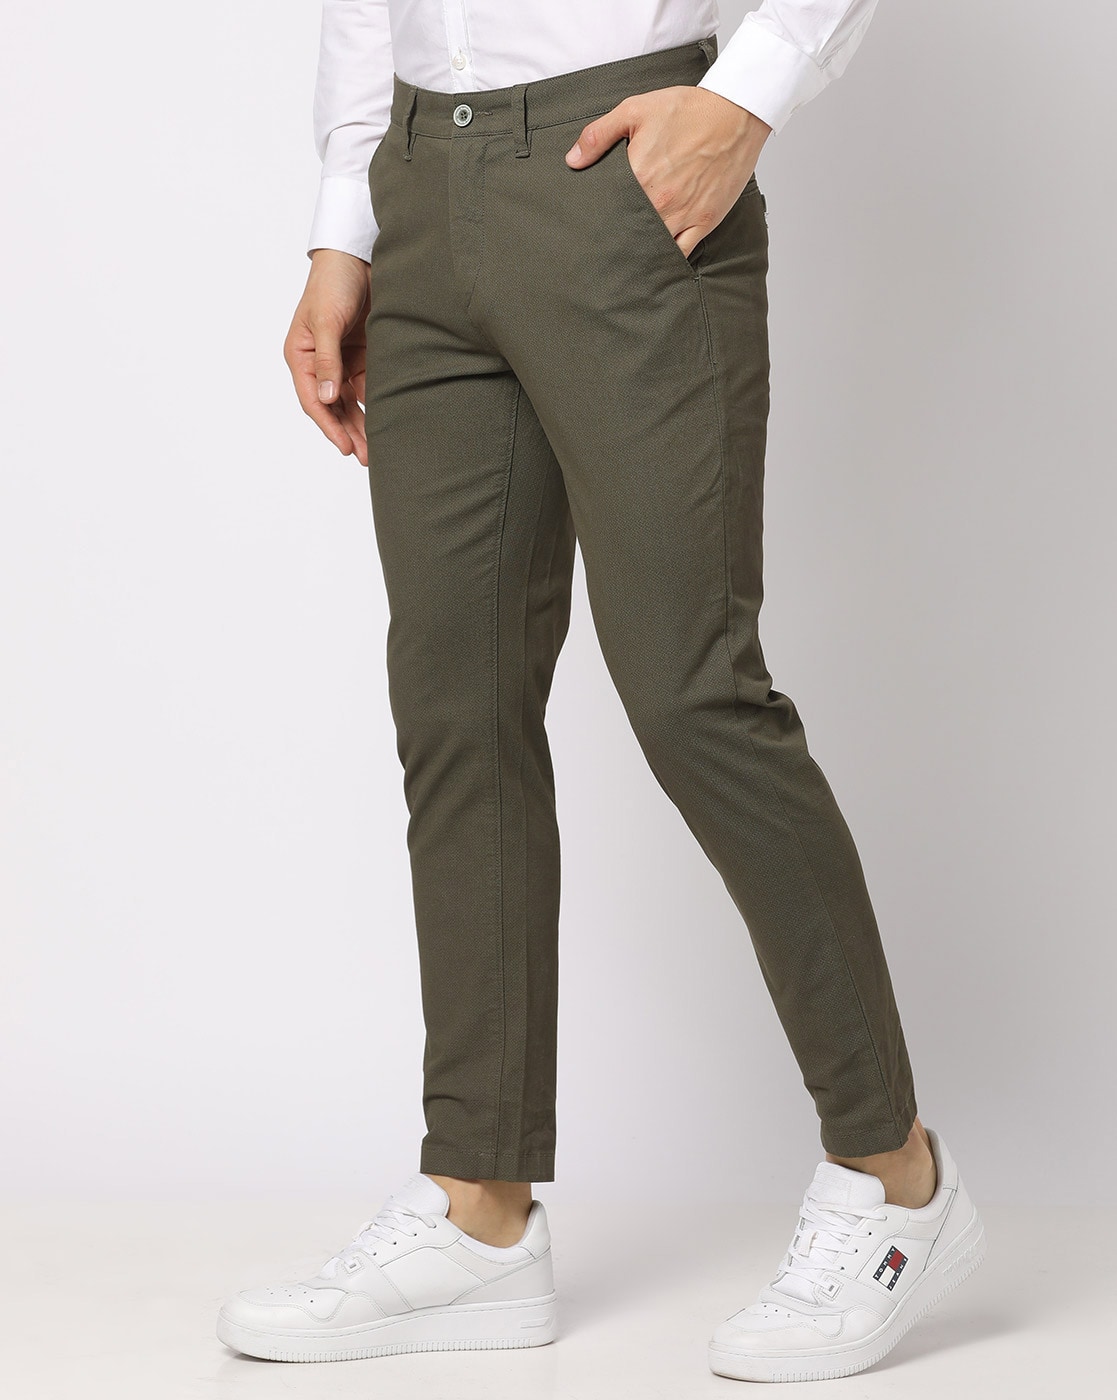 Straight High Waist Pants Men's Retro Naples Pants Casual Paris Buckle  Trousers | eBay